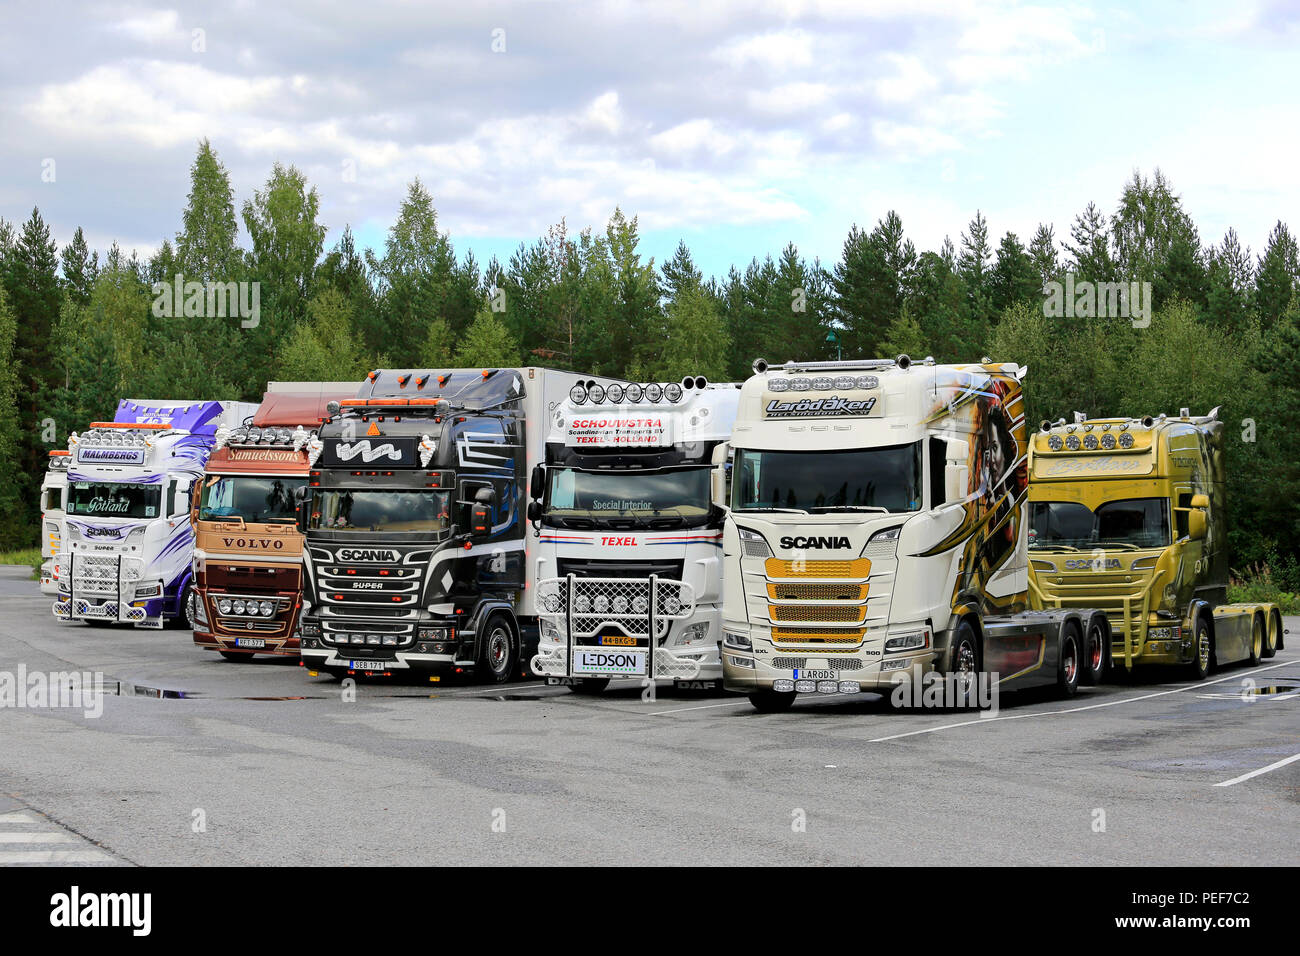 LEMPAALA, Finnland - 12. AUGUST 2018: die Gruppe der internationalen Show Trucks auf Truck Stop auf Ihrer Rückkehr von Power Truck Show 2018 geparkt. Stockfoto